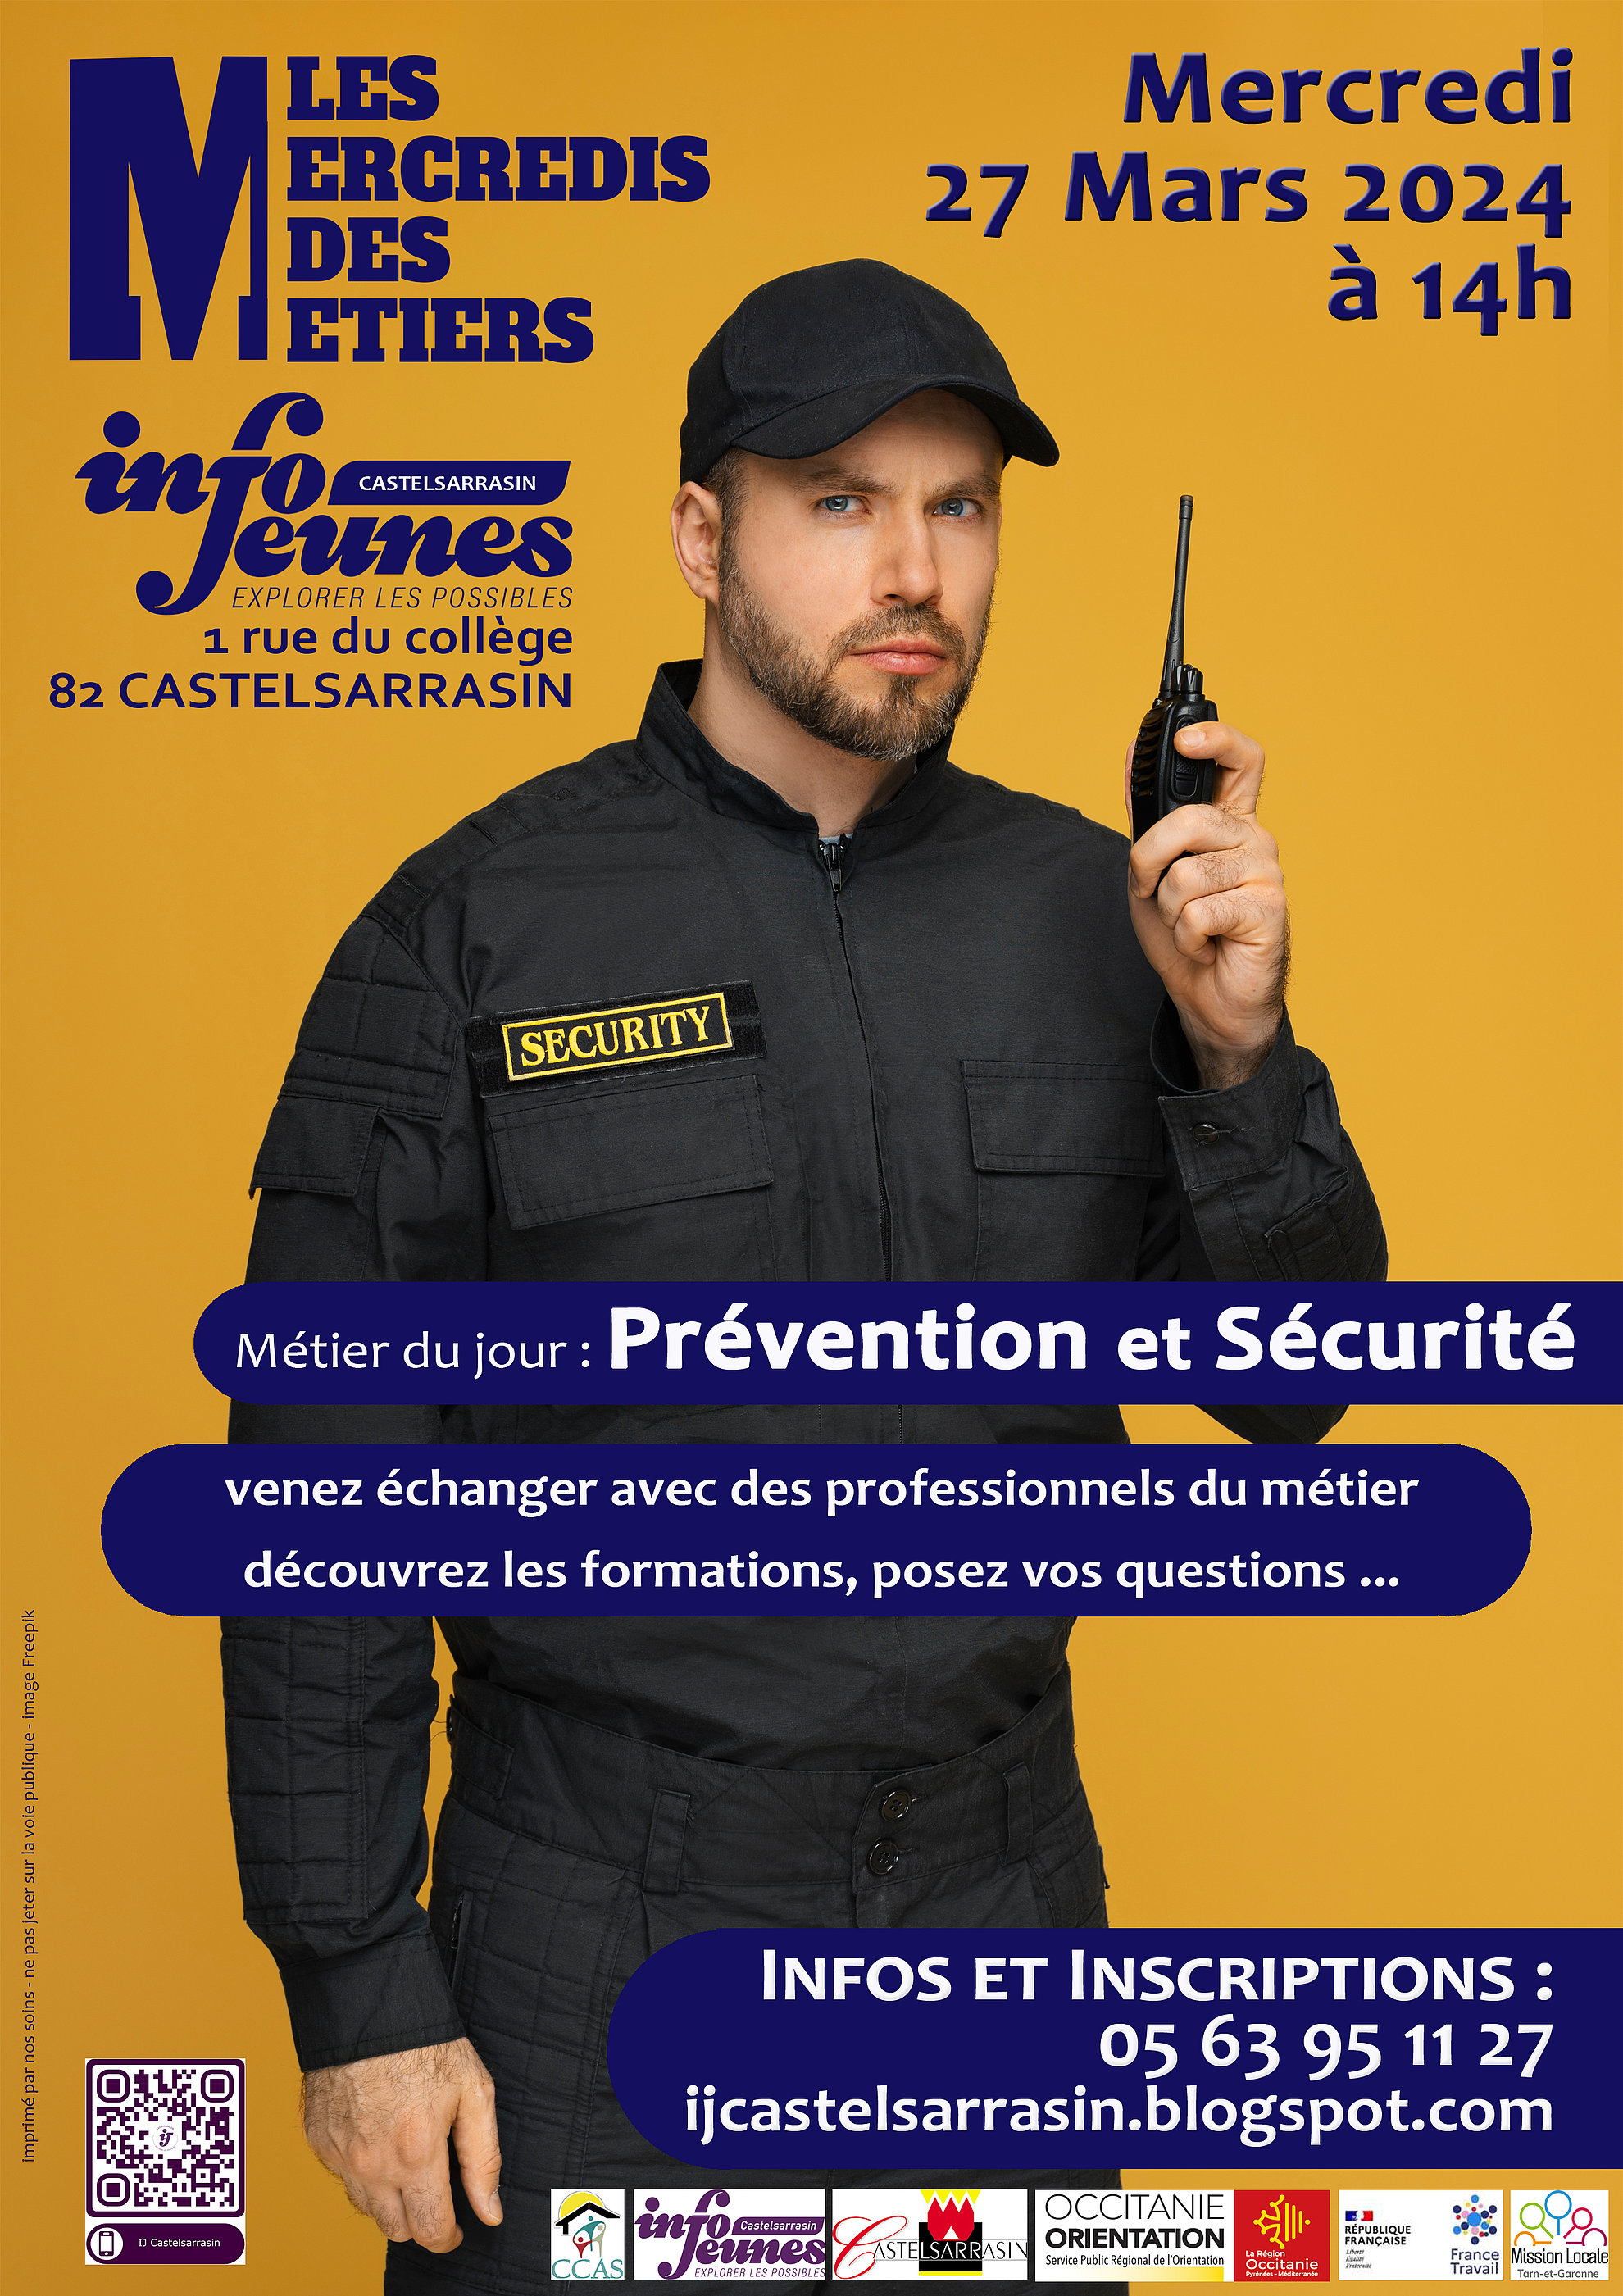 Affiche : métier du jour "Prévention et Sécurité" le mercredi 27 mars 2024